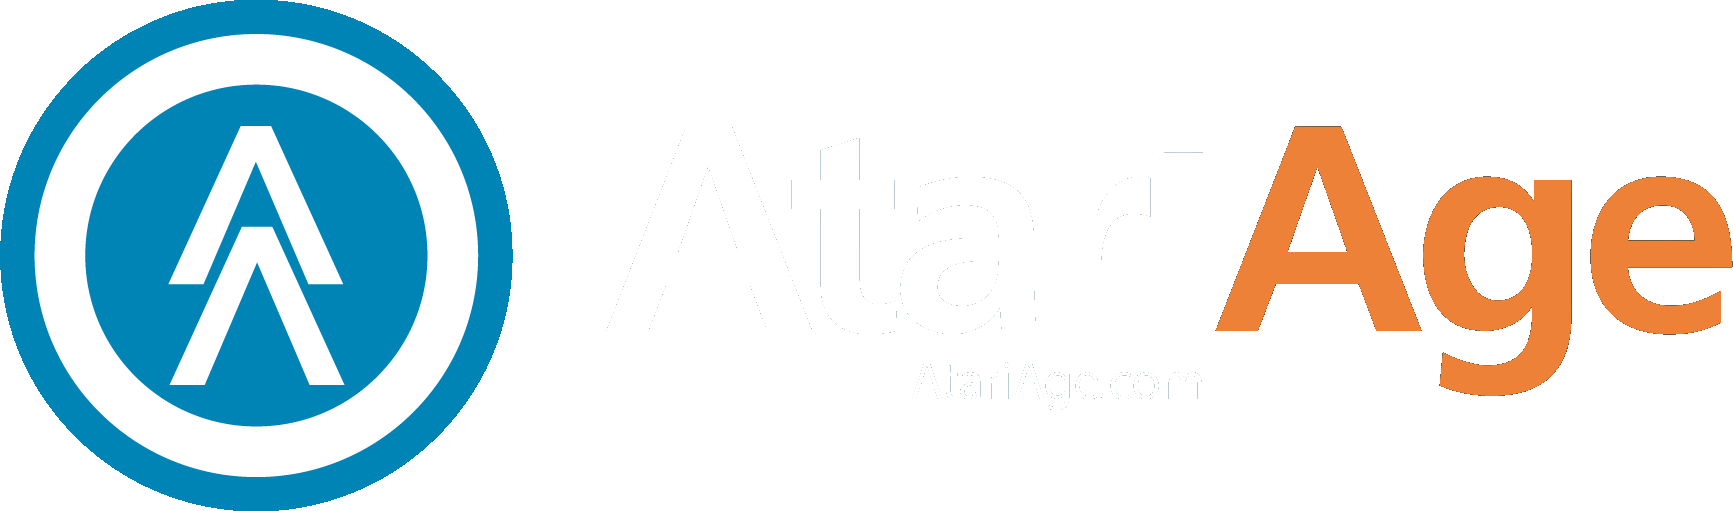 AtariAge - Logo.png